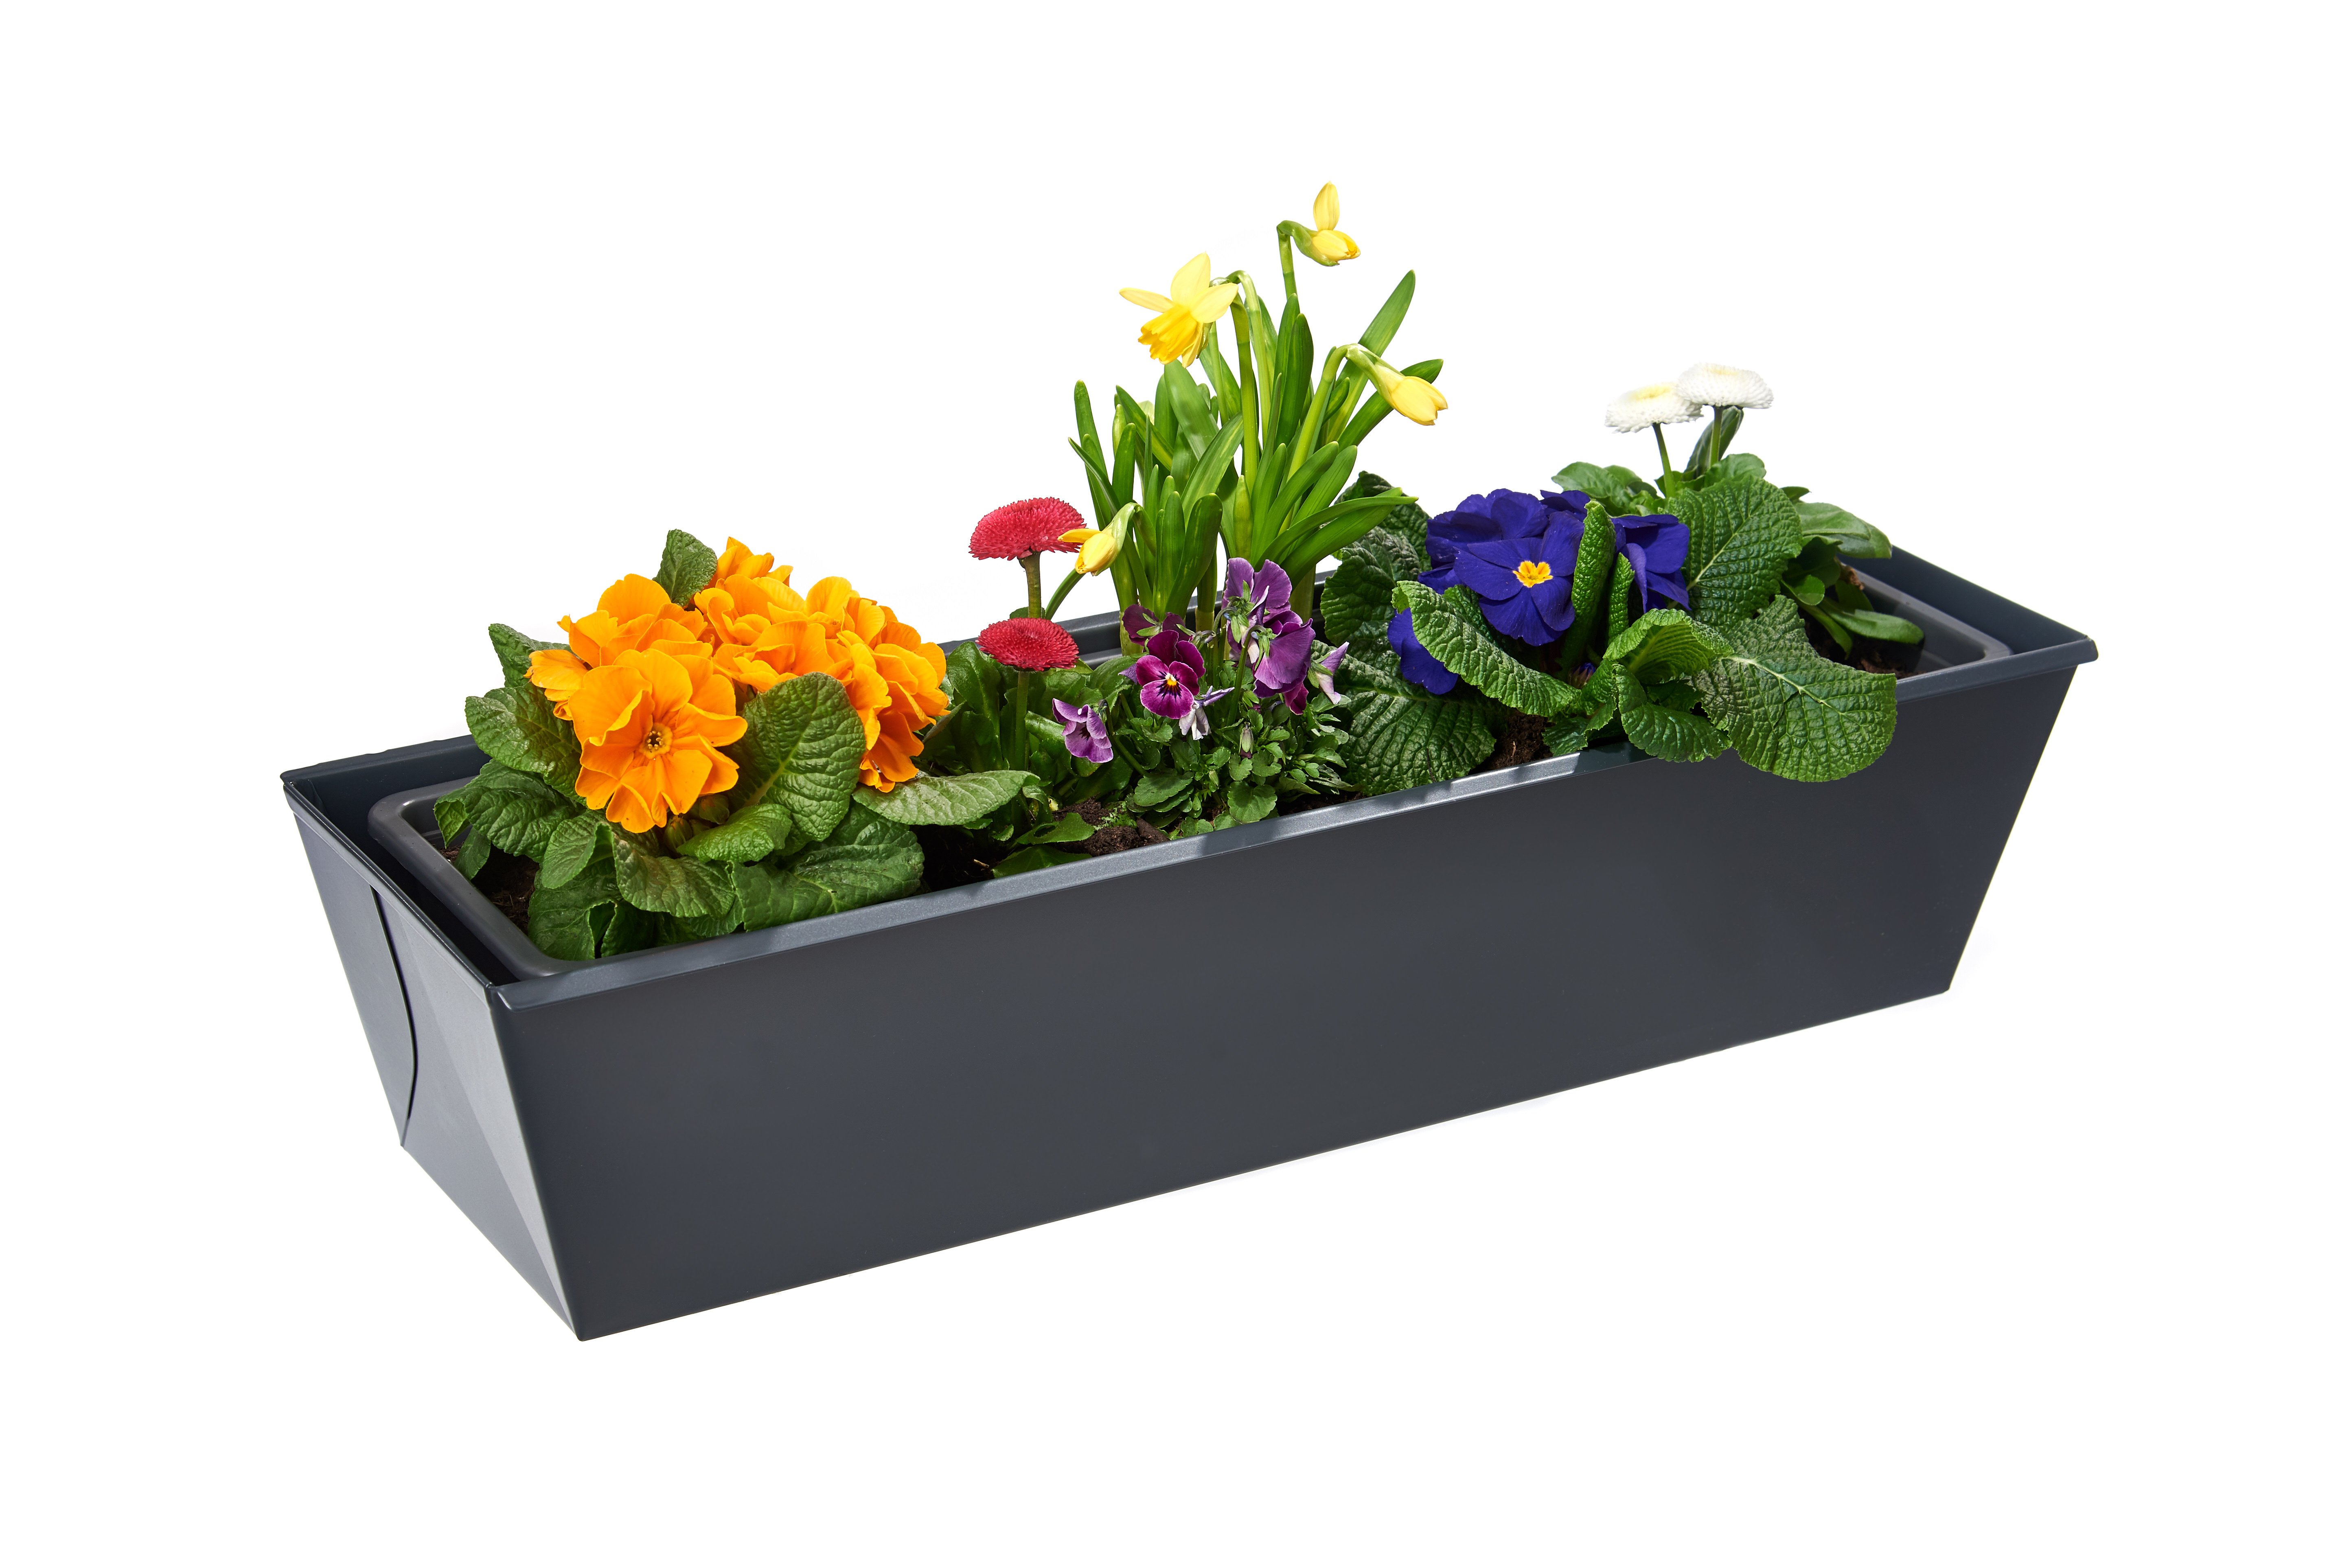 gabioka flowerbox 60cm standard anthrazit pulverbeschichtet (RAL 7016 glatt matt)